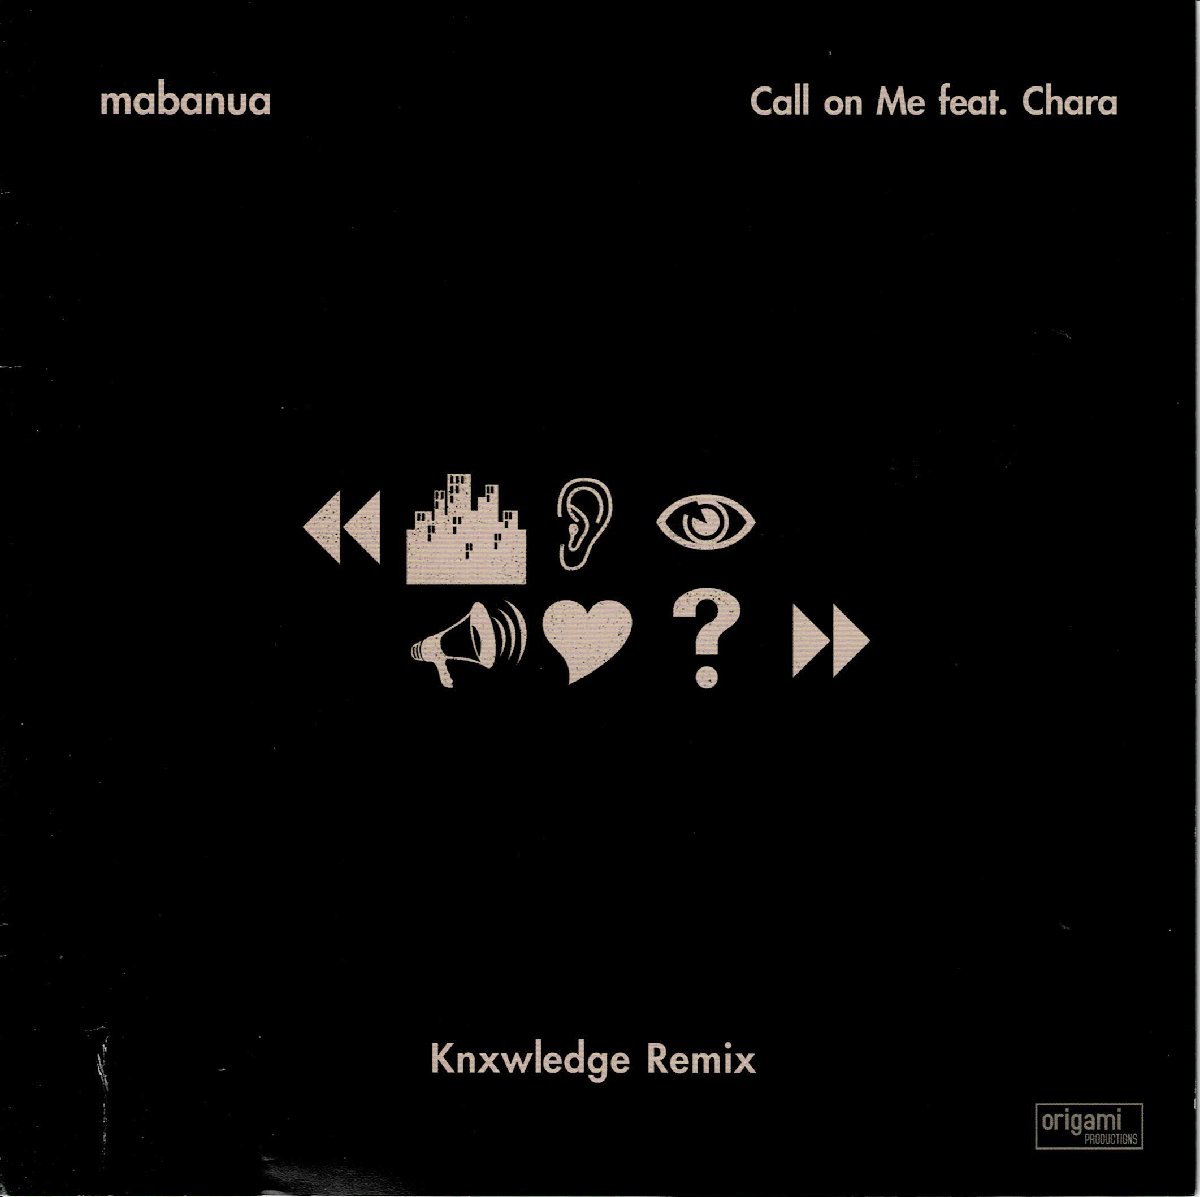  large masterpiece mabanua(mabana) analogue 7 -inch remix EP[Call on Me feat. Chara Knxwledge Remix]